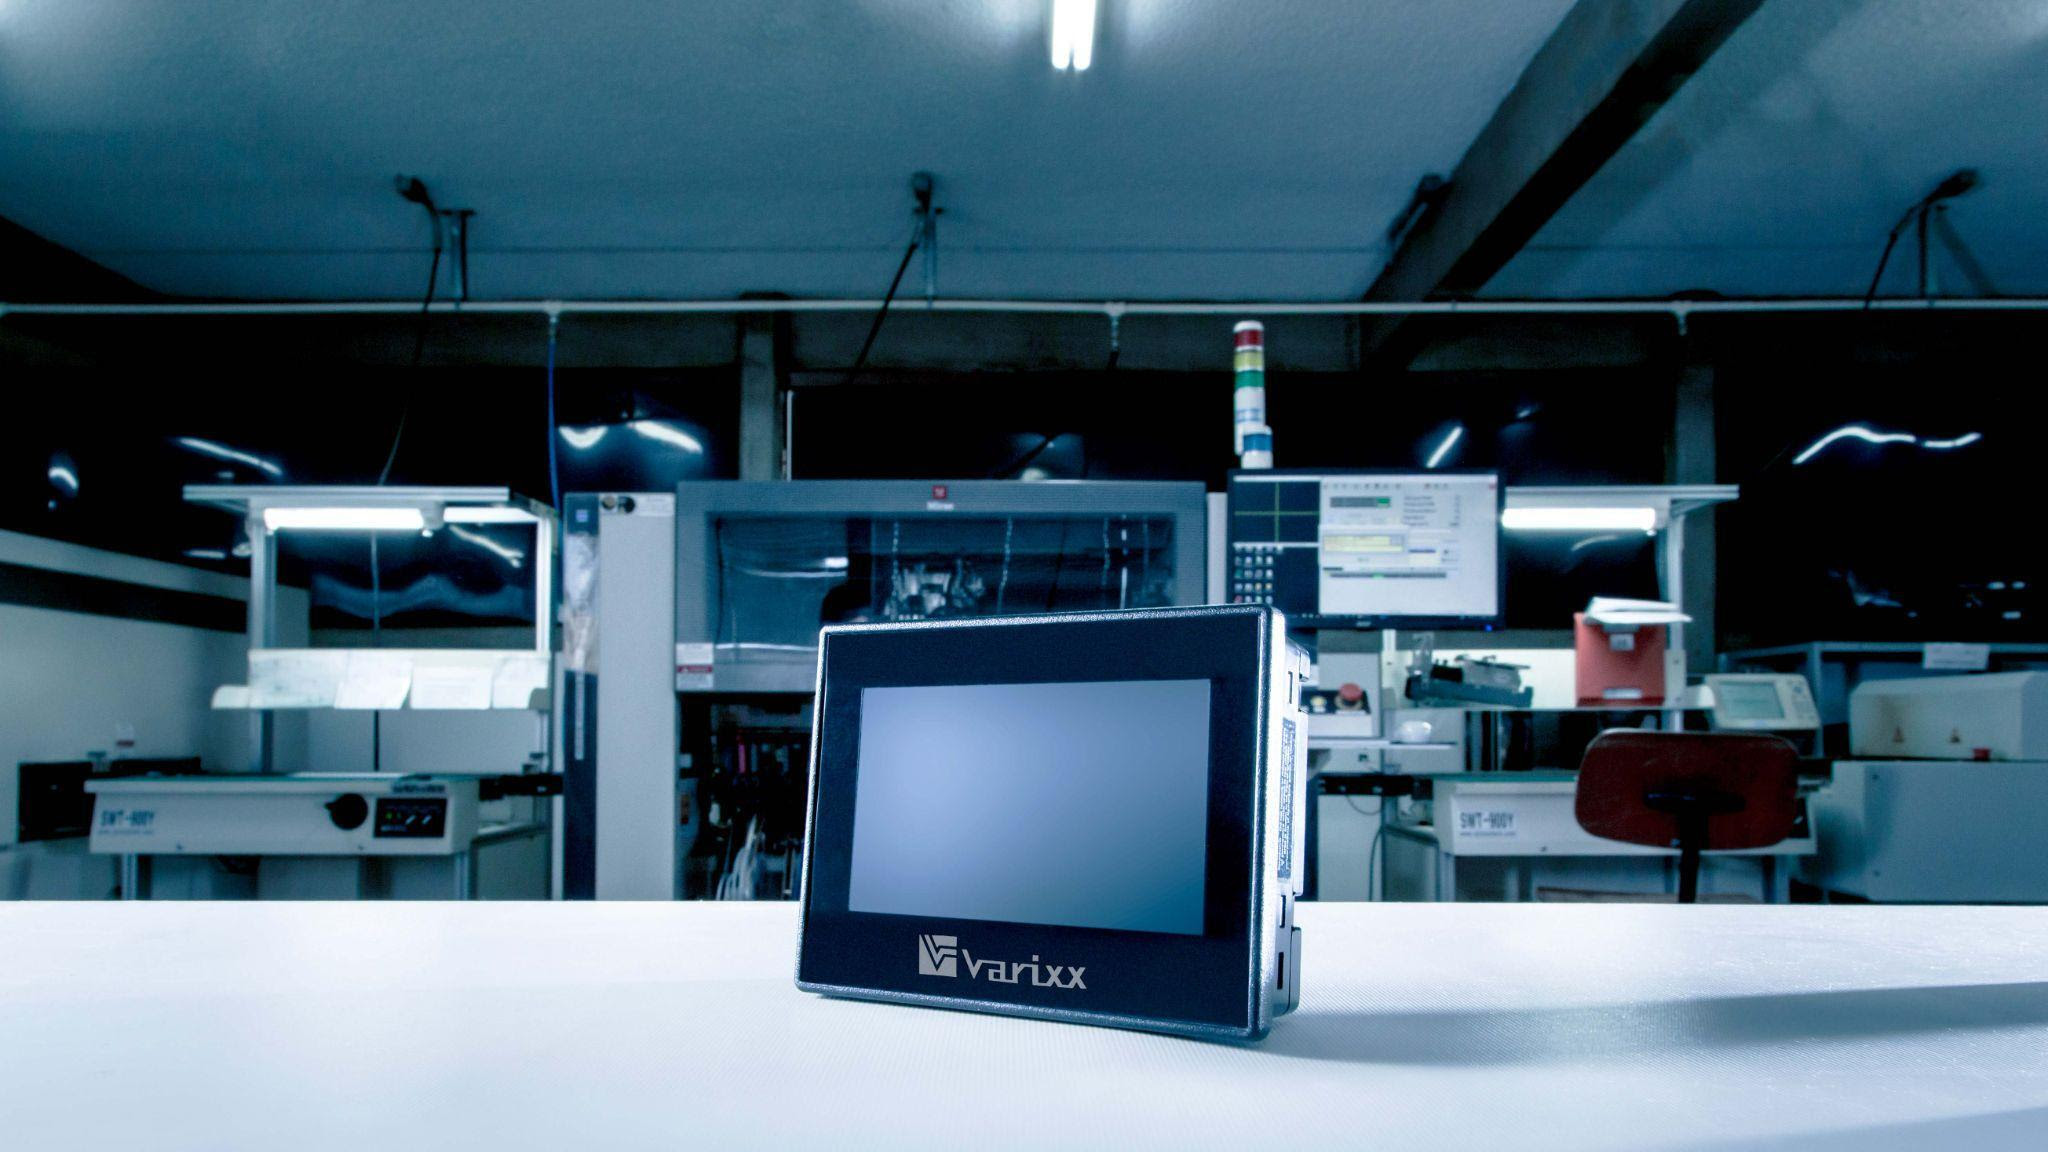 Varixx espera alcançar R$32 milhões até o final de 2021 e mira mercado de sensores inteligentes e iluminação sustentável